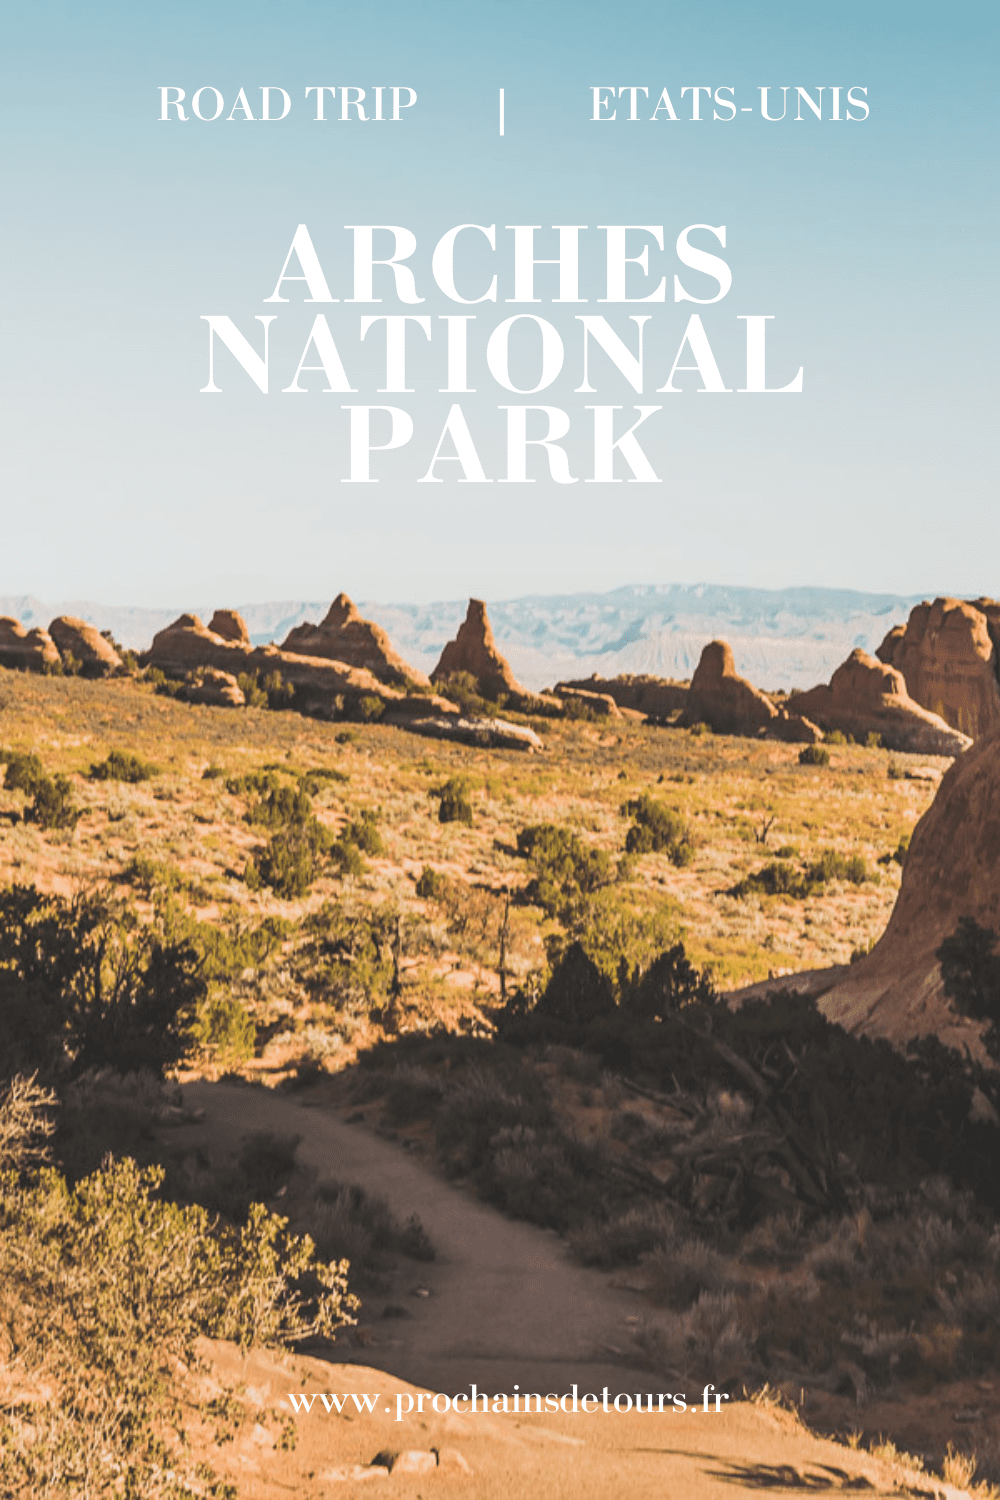 Vous planifiez un road trip dans l'ouest américain ? Ne pensez pas plus loin que le parc national des Arches dans l'Utah ! Avec ses formations rocheuses rouges emblématiques, la fascinante Delicate Arch, la fascinante Fiery Furnace, et bien plus encore, ce parc vous offrira une expérience inoubliable. Avec tant de choses à explorer, ne manquez pas tout ce que ce parc a à offrir. Consultez notre guide pour tirer le meilleur parti d'un voyage au Arches National Park.